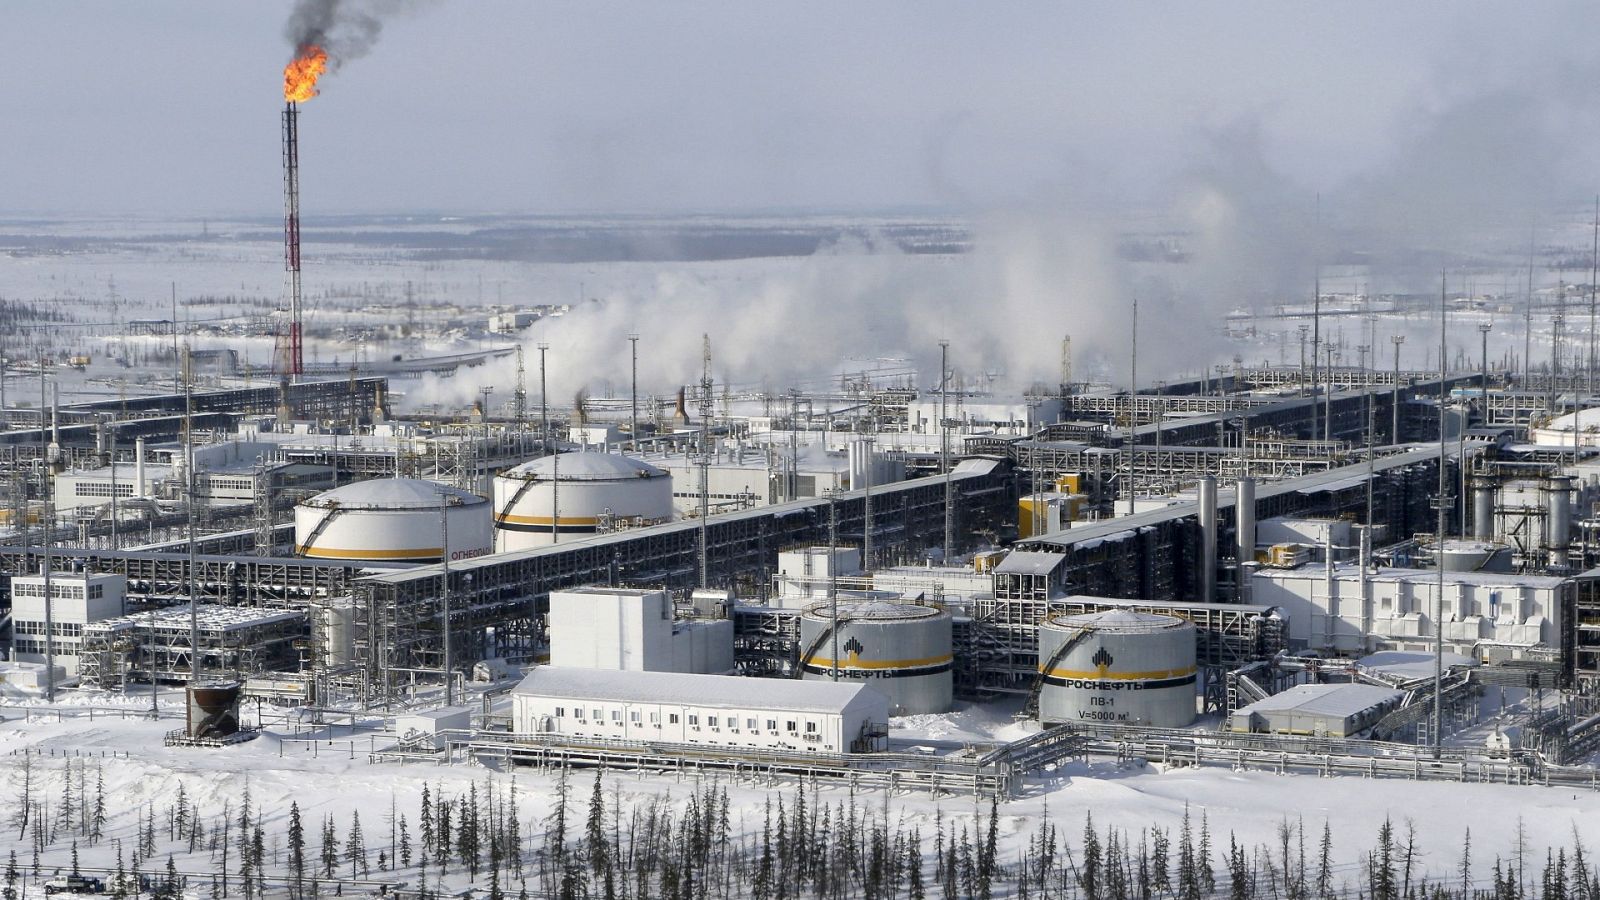 El campo de petróleo Vankorskoye al norte de Krasnoyarsk (Rusia) en una imagen de archivo